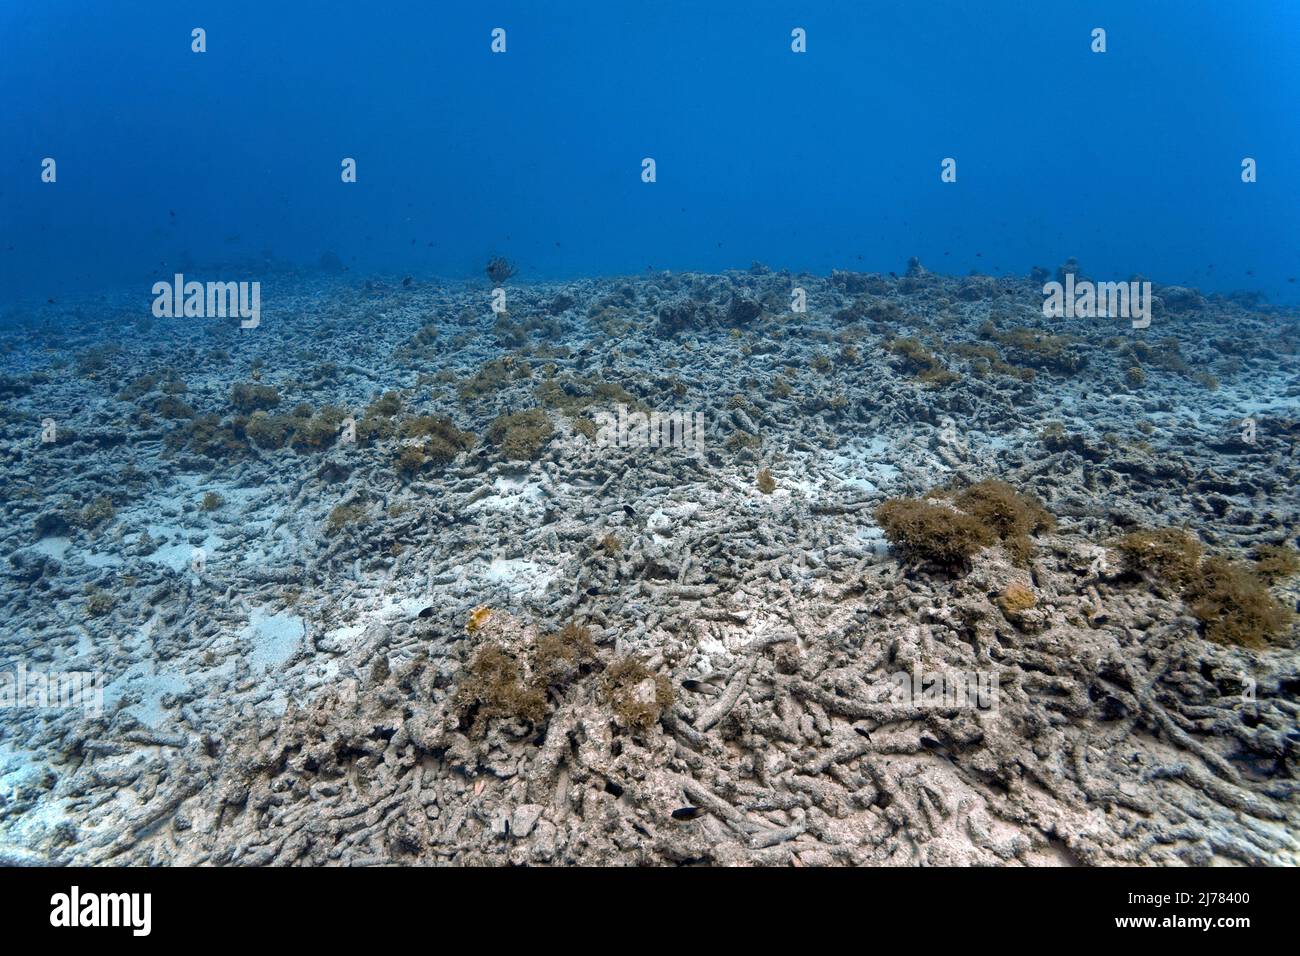 Barriera corallina morta, coralli rotti sul fondo marino, cambiamenti climatici dovuti al riscaldamento globale degradano la salute delle barriere coralline, Curacao, Antille olandesi, Foto Stock